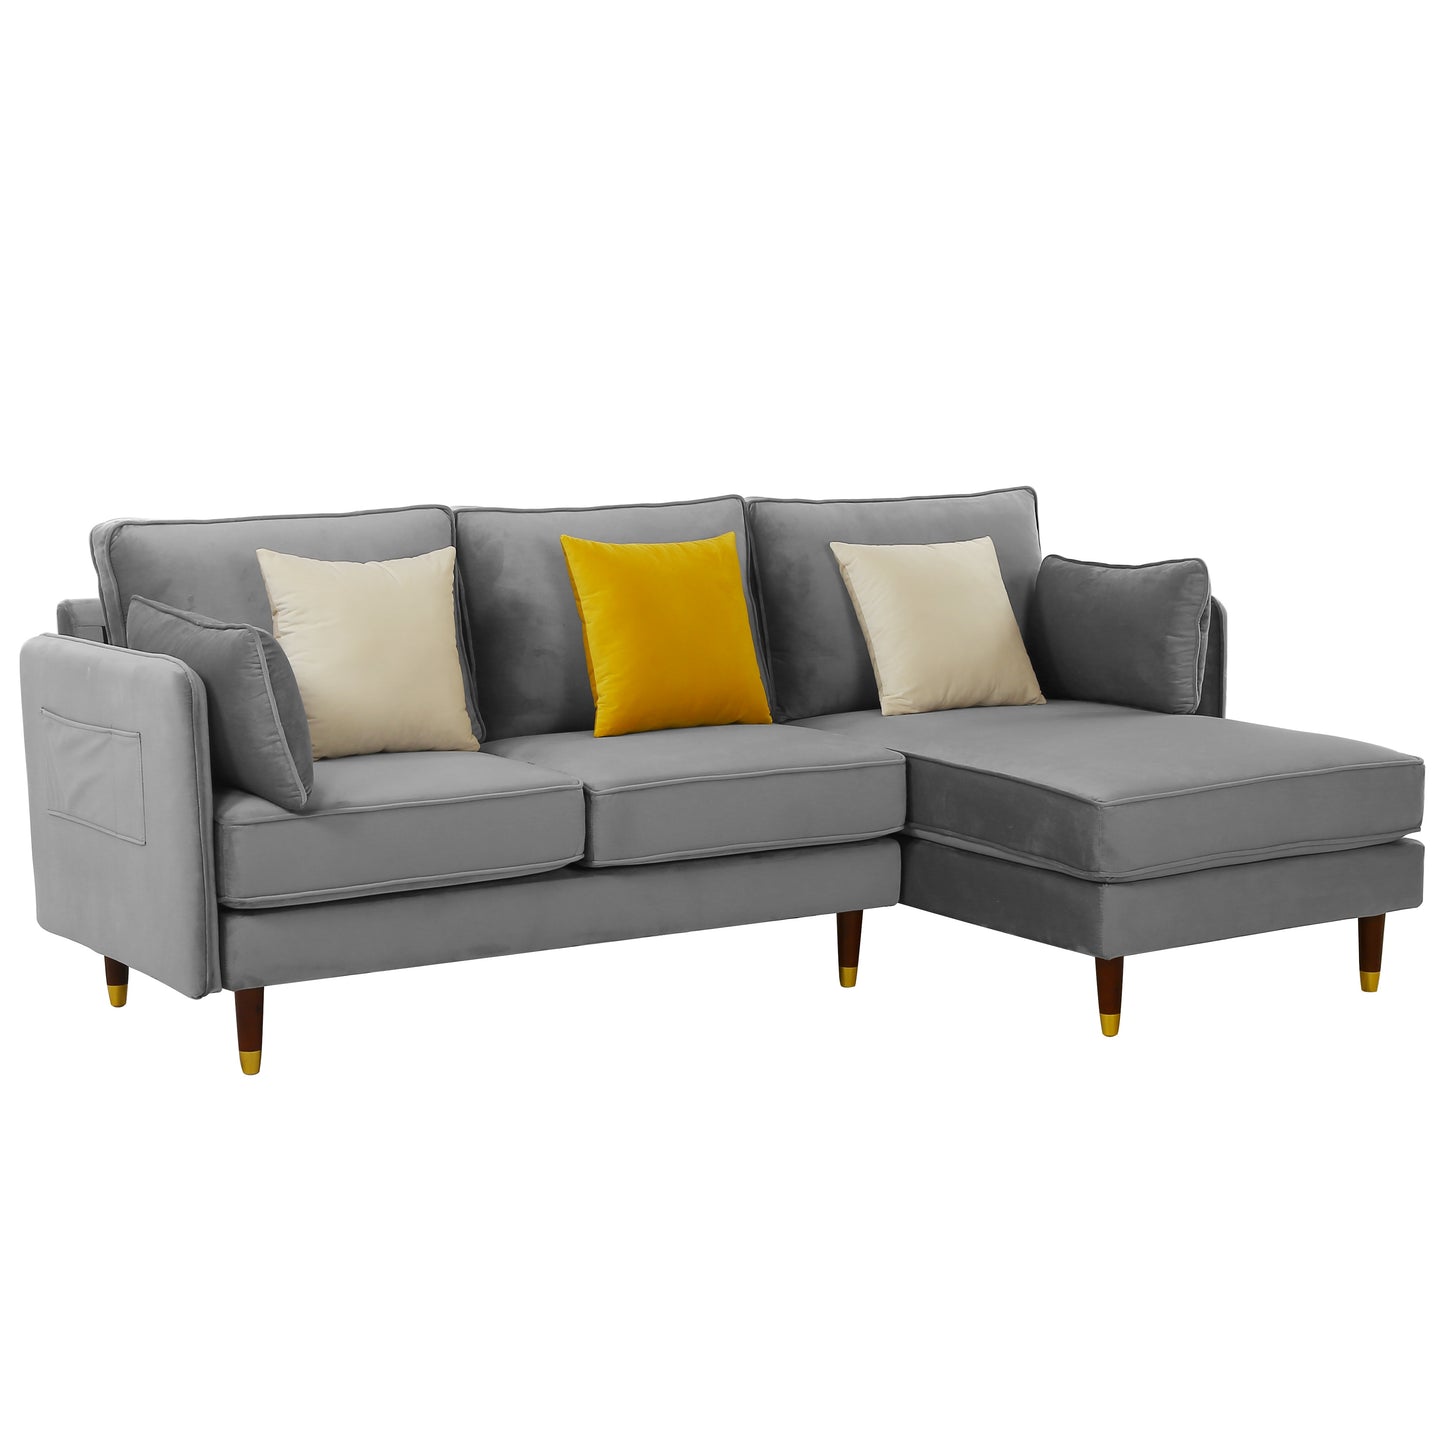 Reversible sectional sofa Light grey Soft Velvet fabric